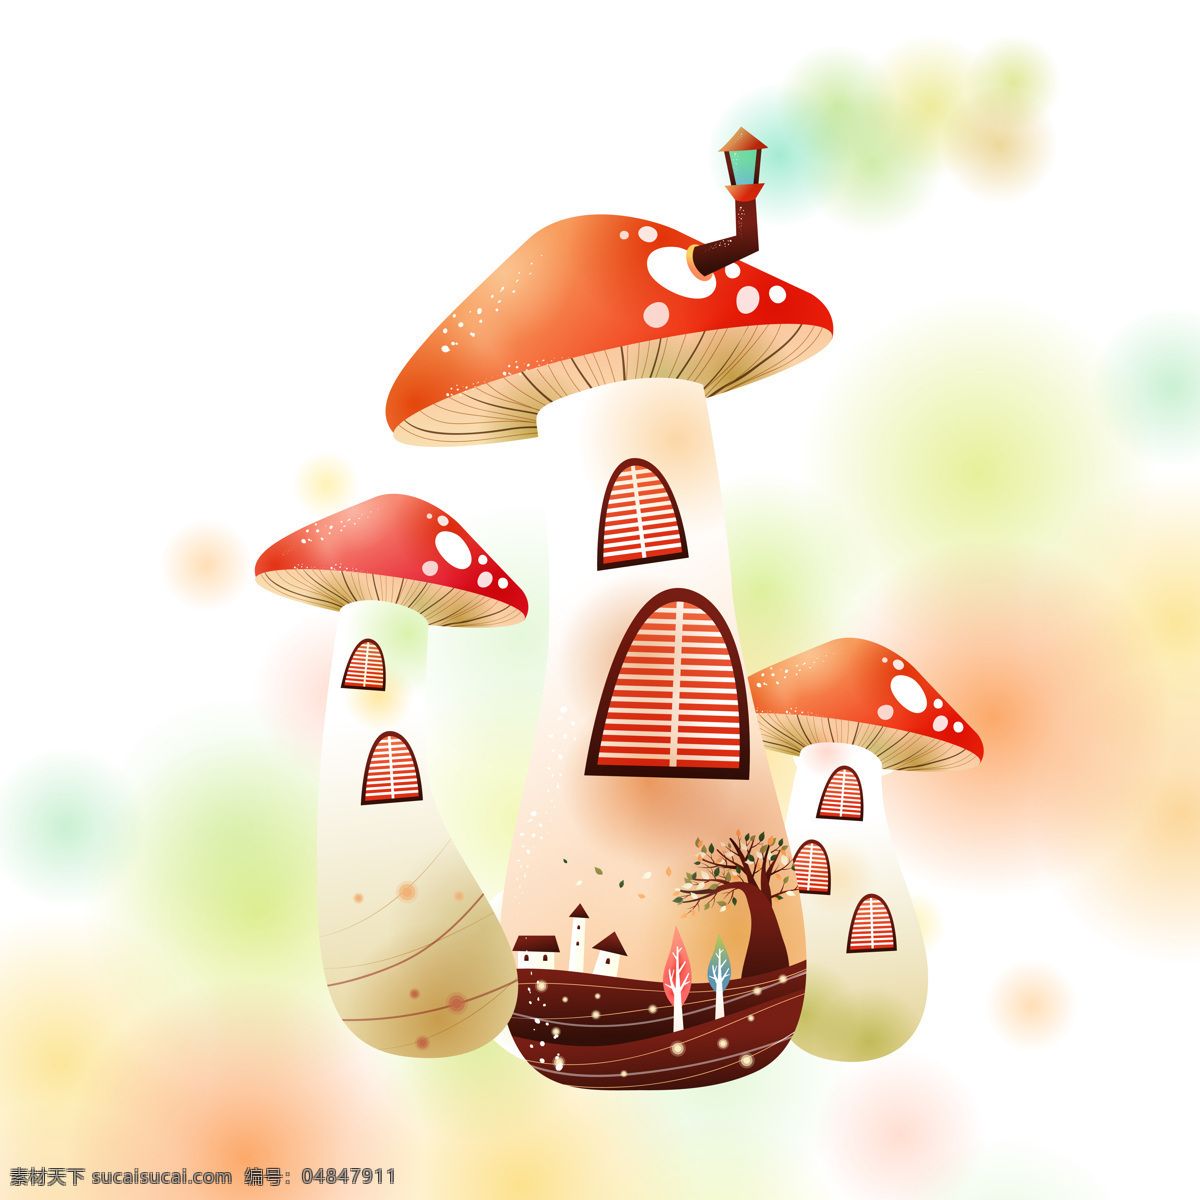 清新 蘑菇 房子 装饰画 小巧 可爱 动画